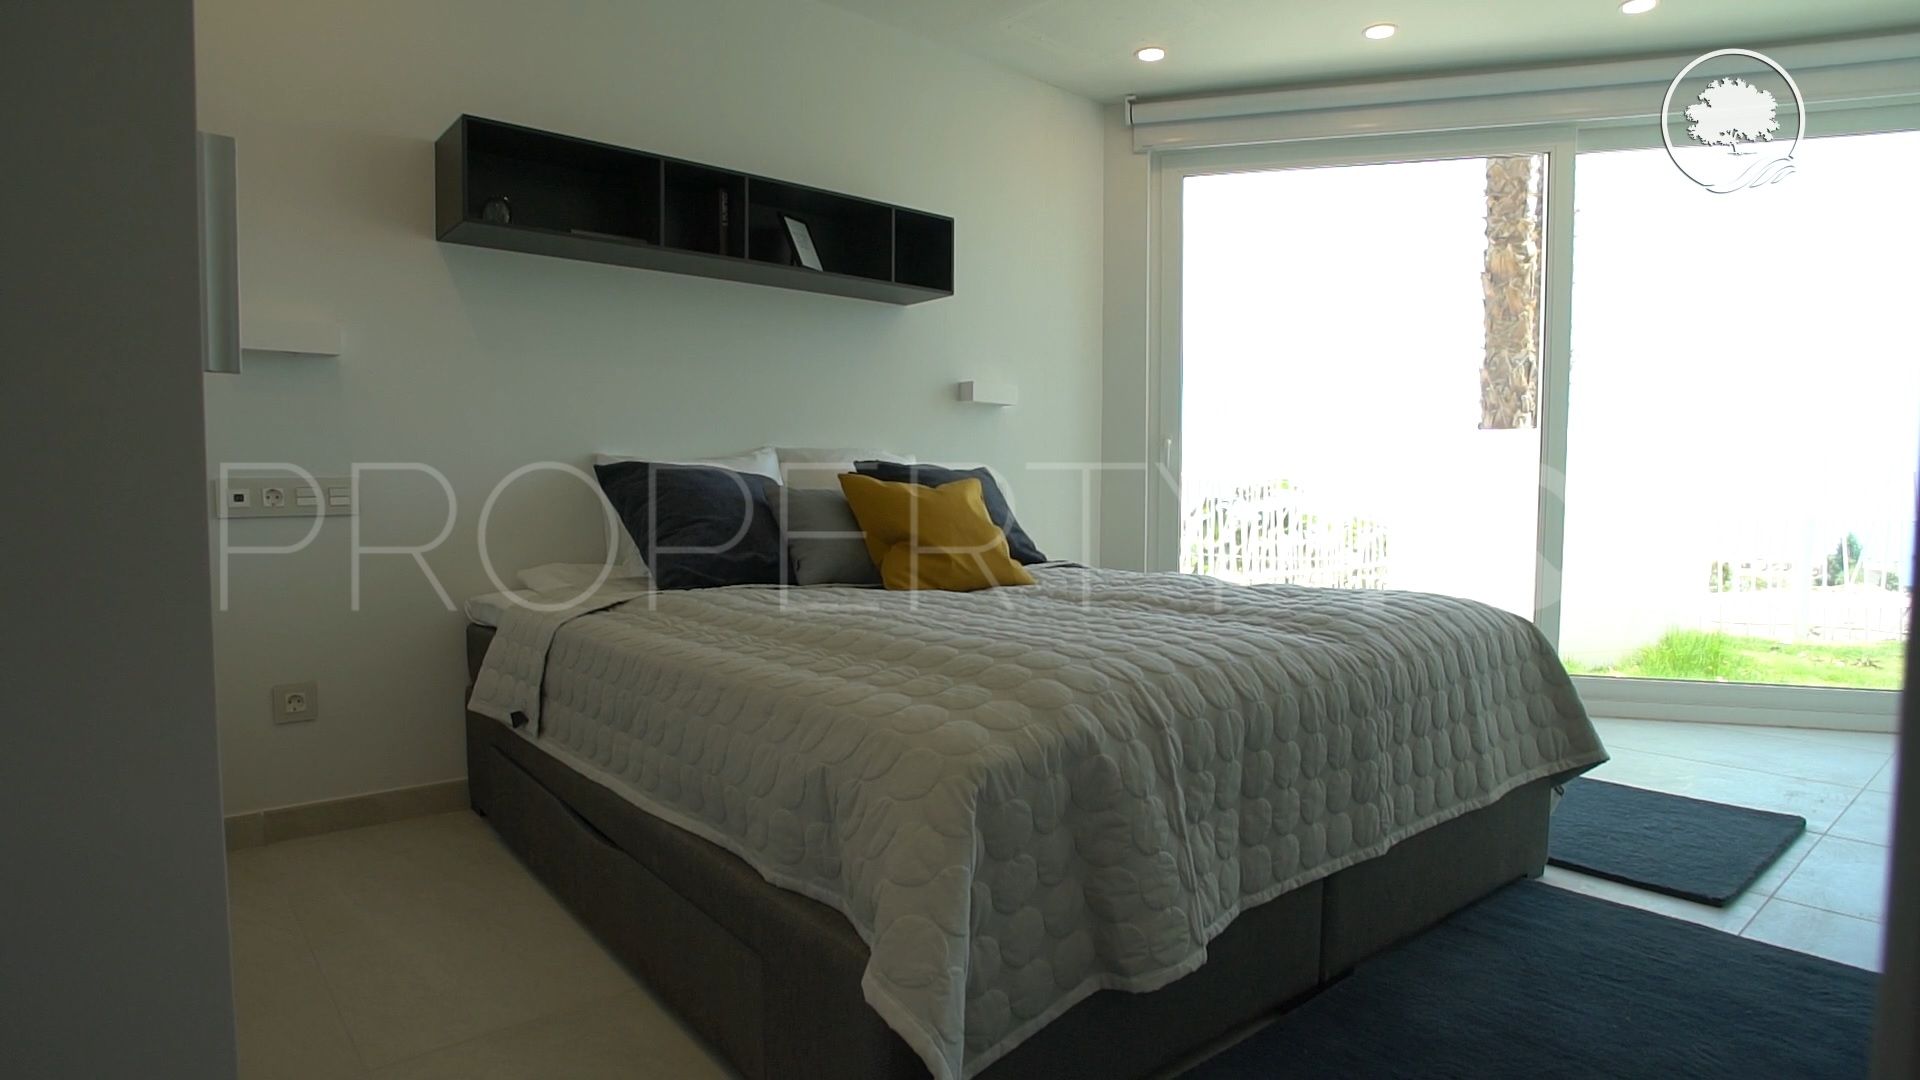 For sale villa with 4 bedrooms in El Higueron